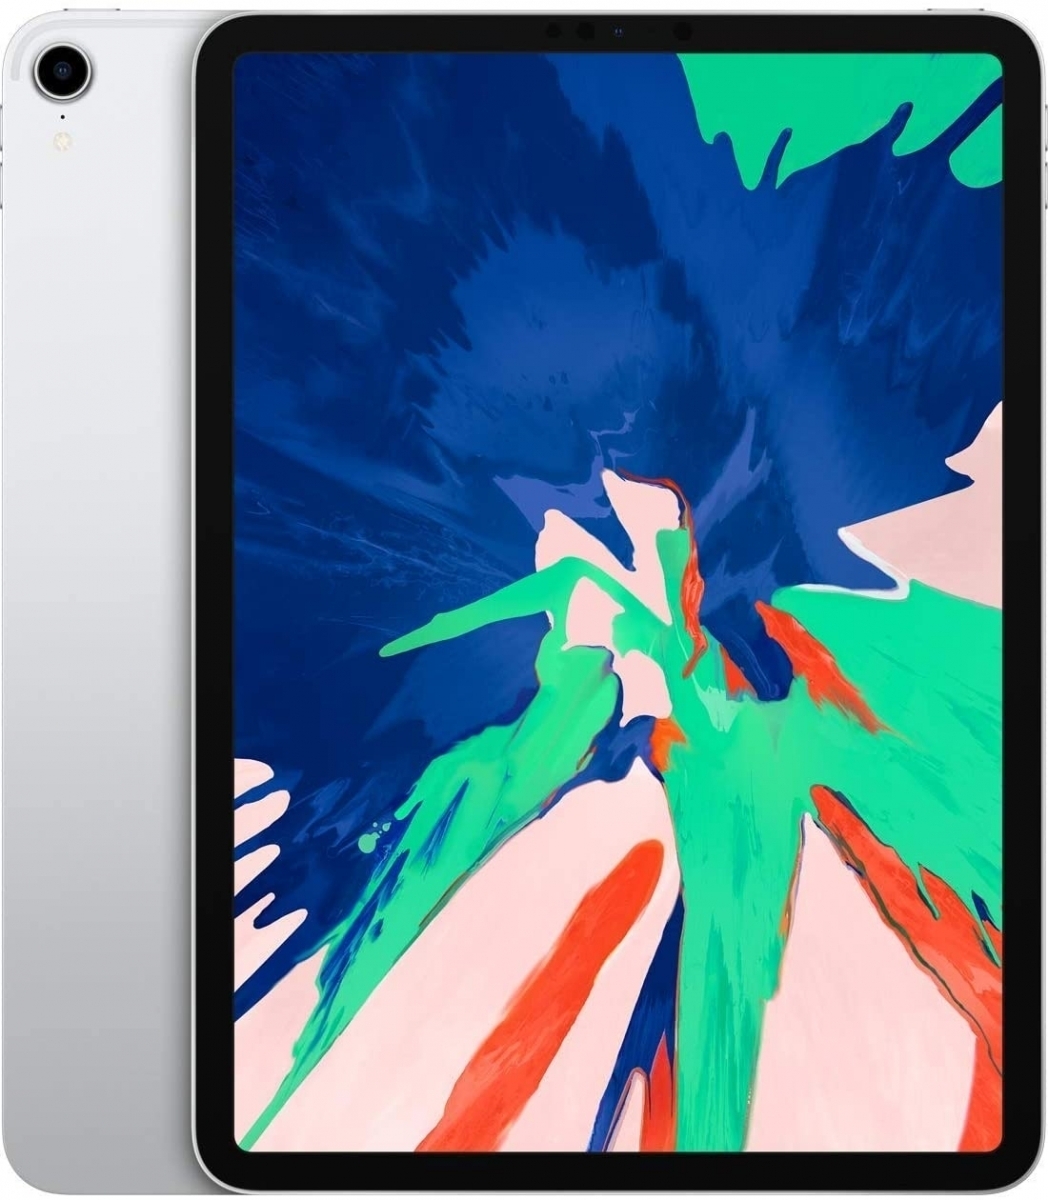 アウトレット専用商品 Pro iPad 11インチ 64GB【美品】 Wi-Fi+Cellular タブレット